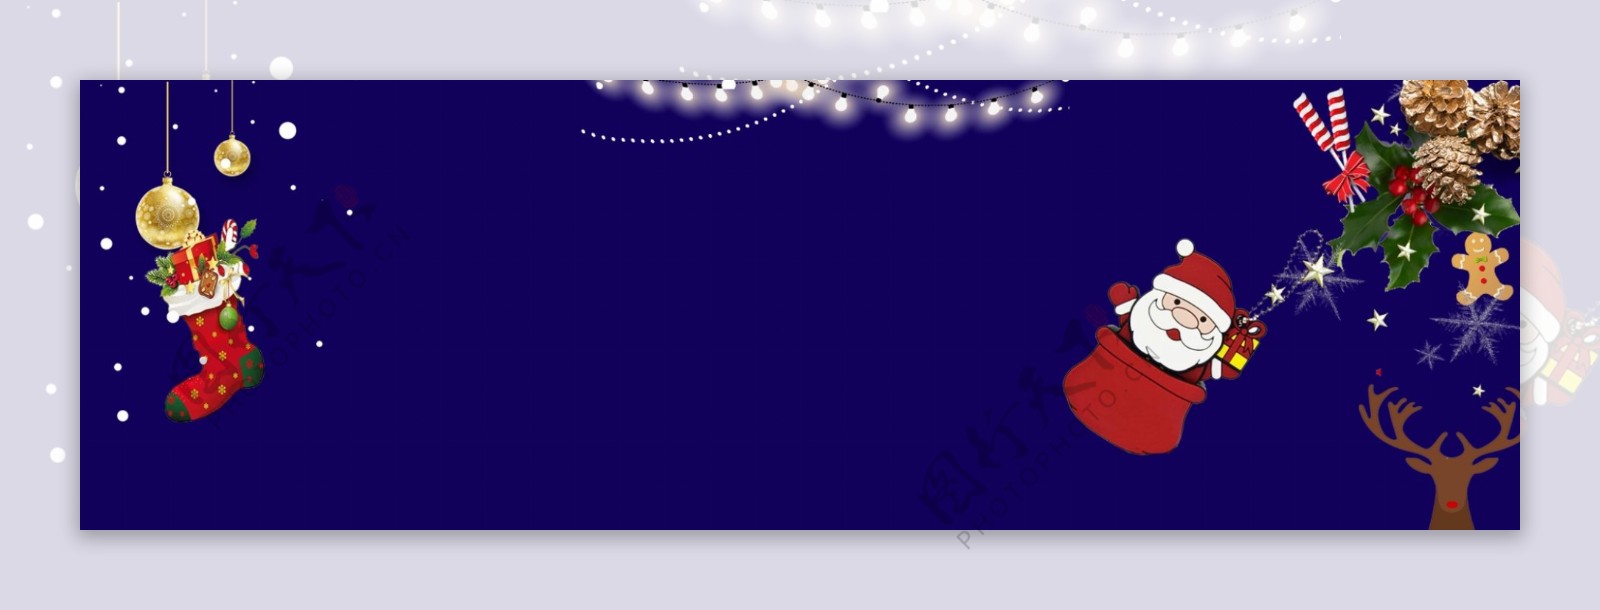 丝带圣诞节蓝色卡通手绘banner背景